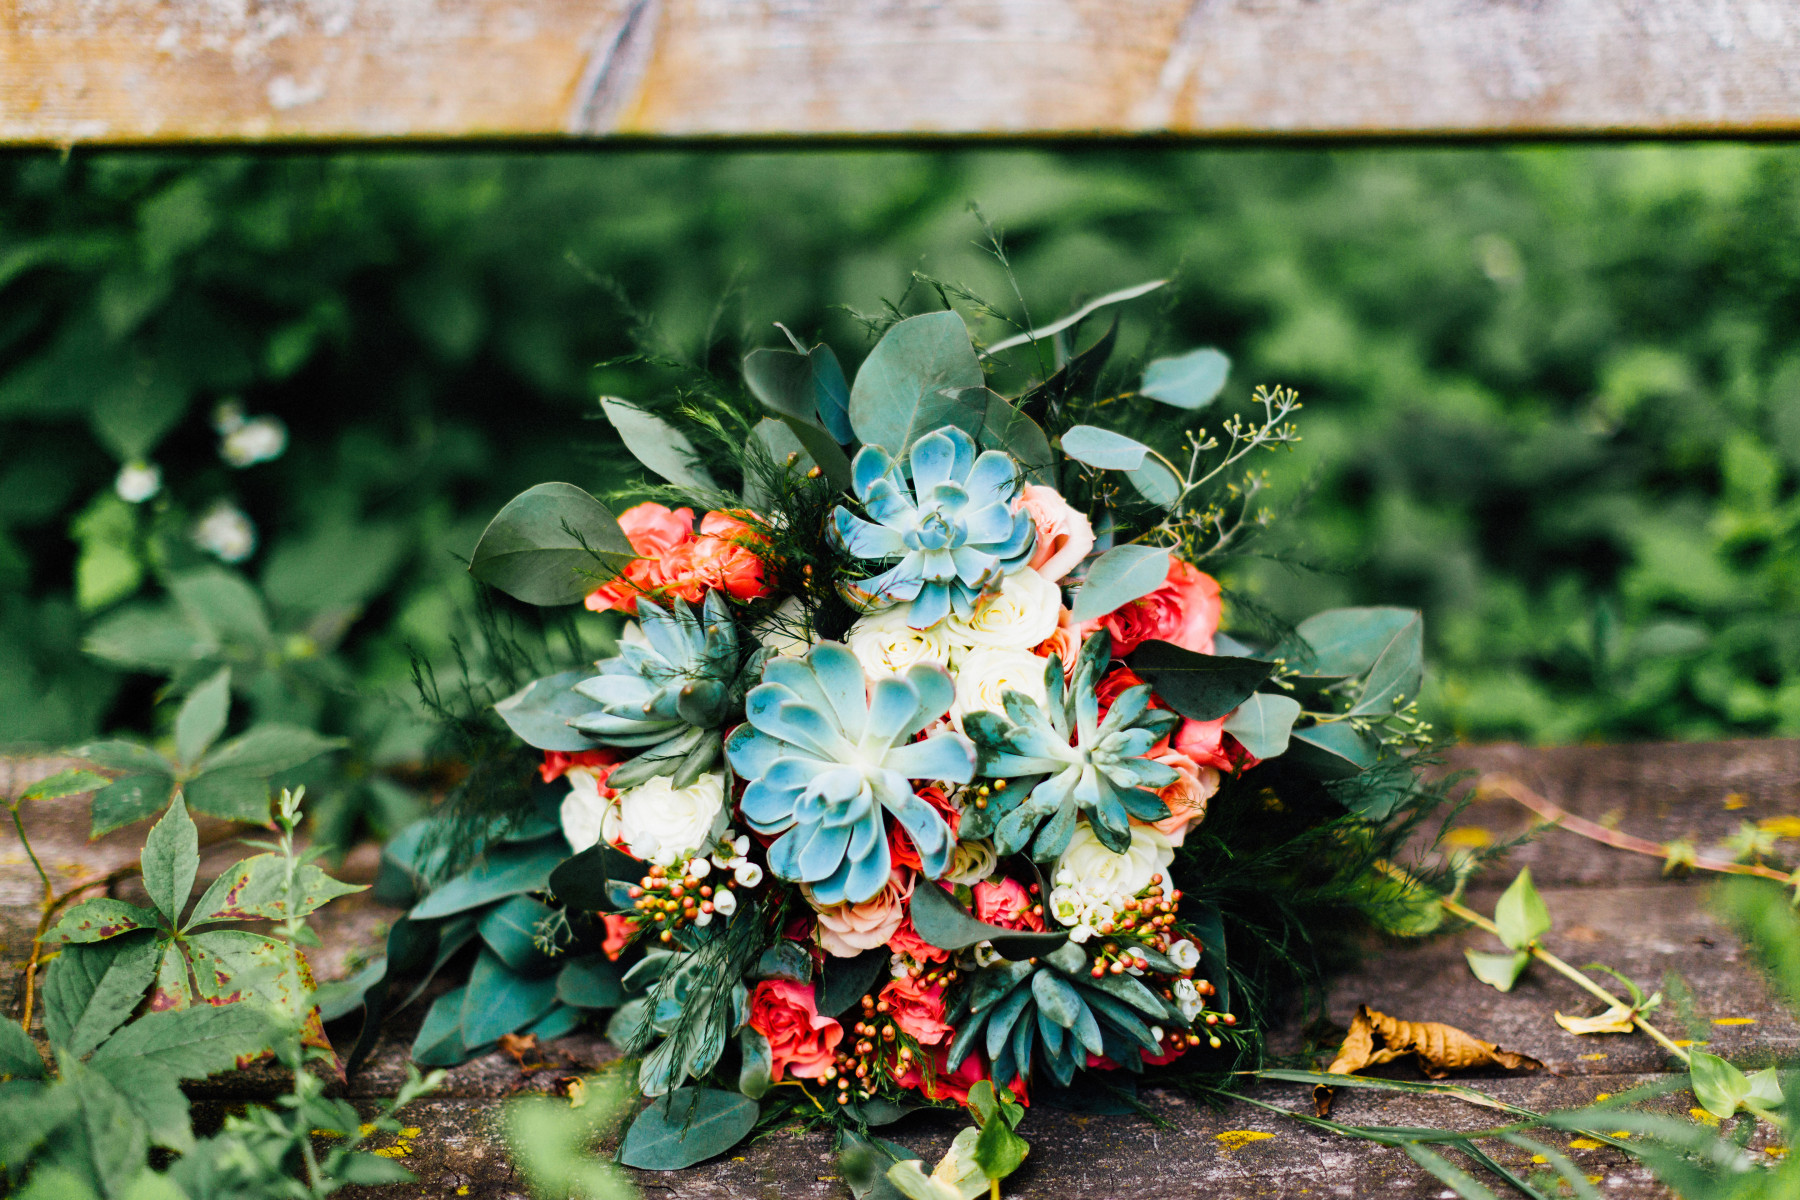 st. charles wedding floral designer